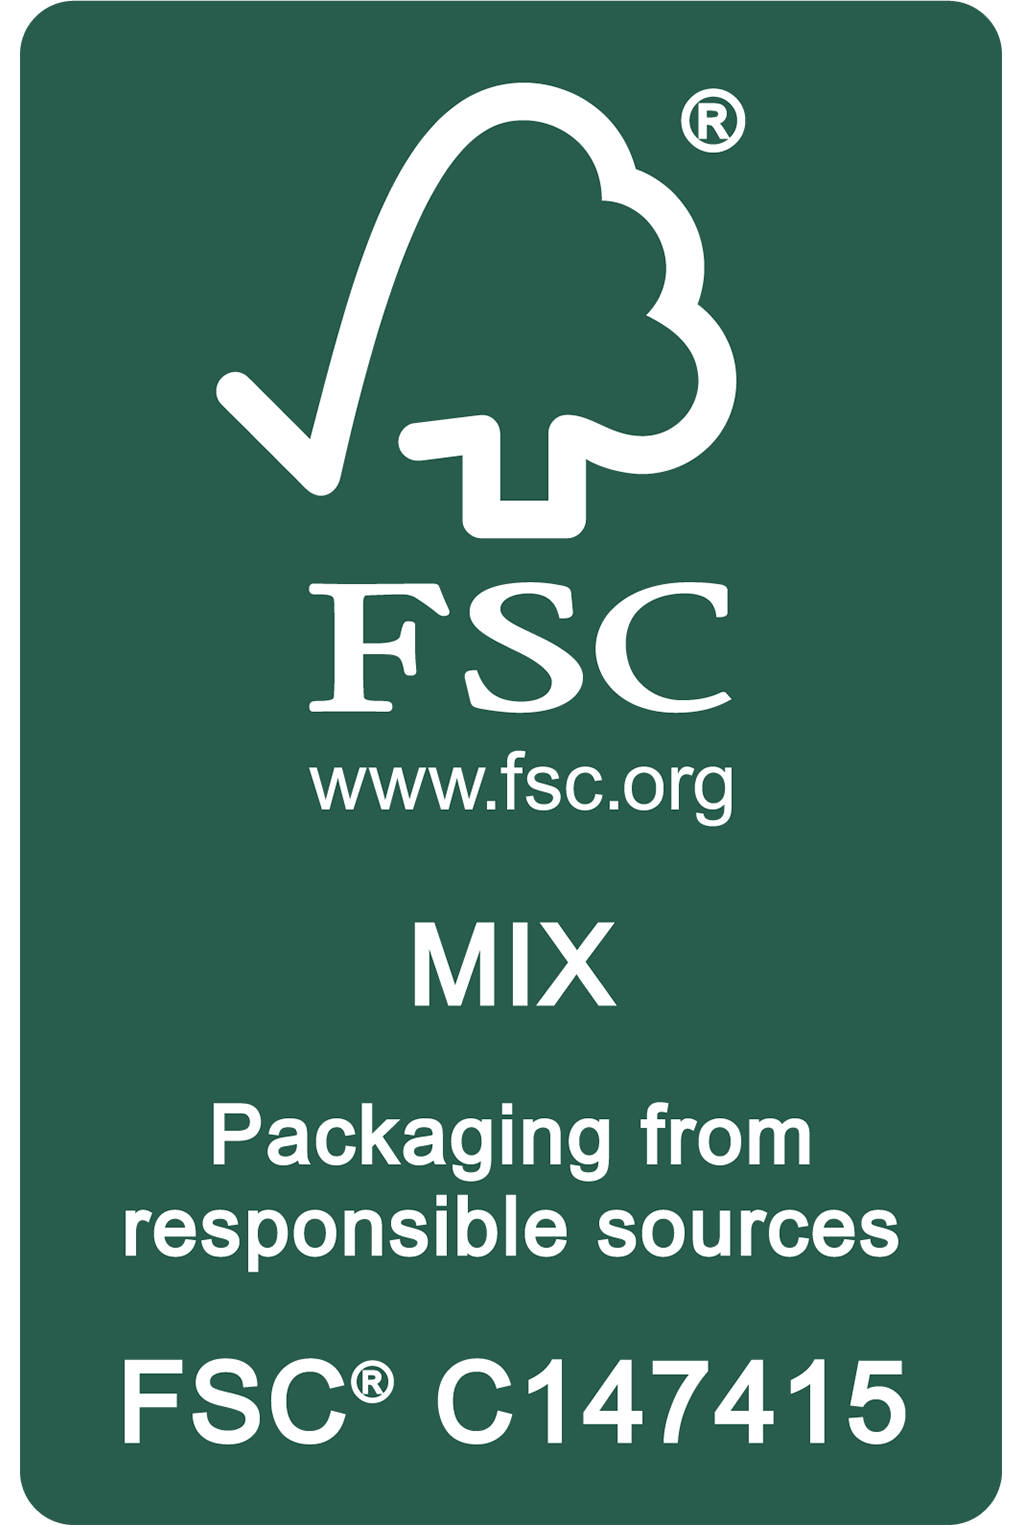 Packaging-friendly FSC certification